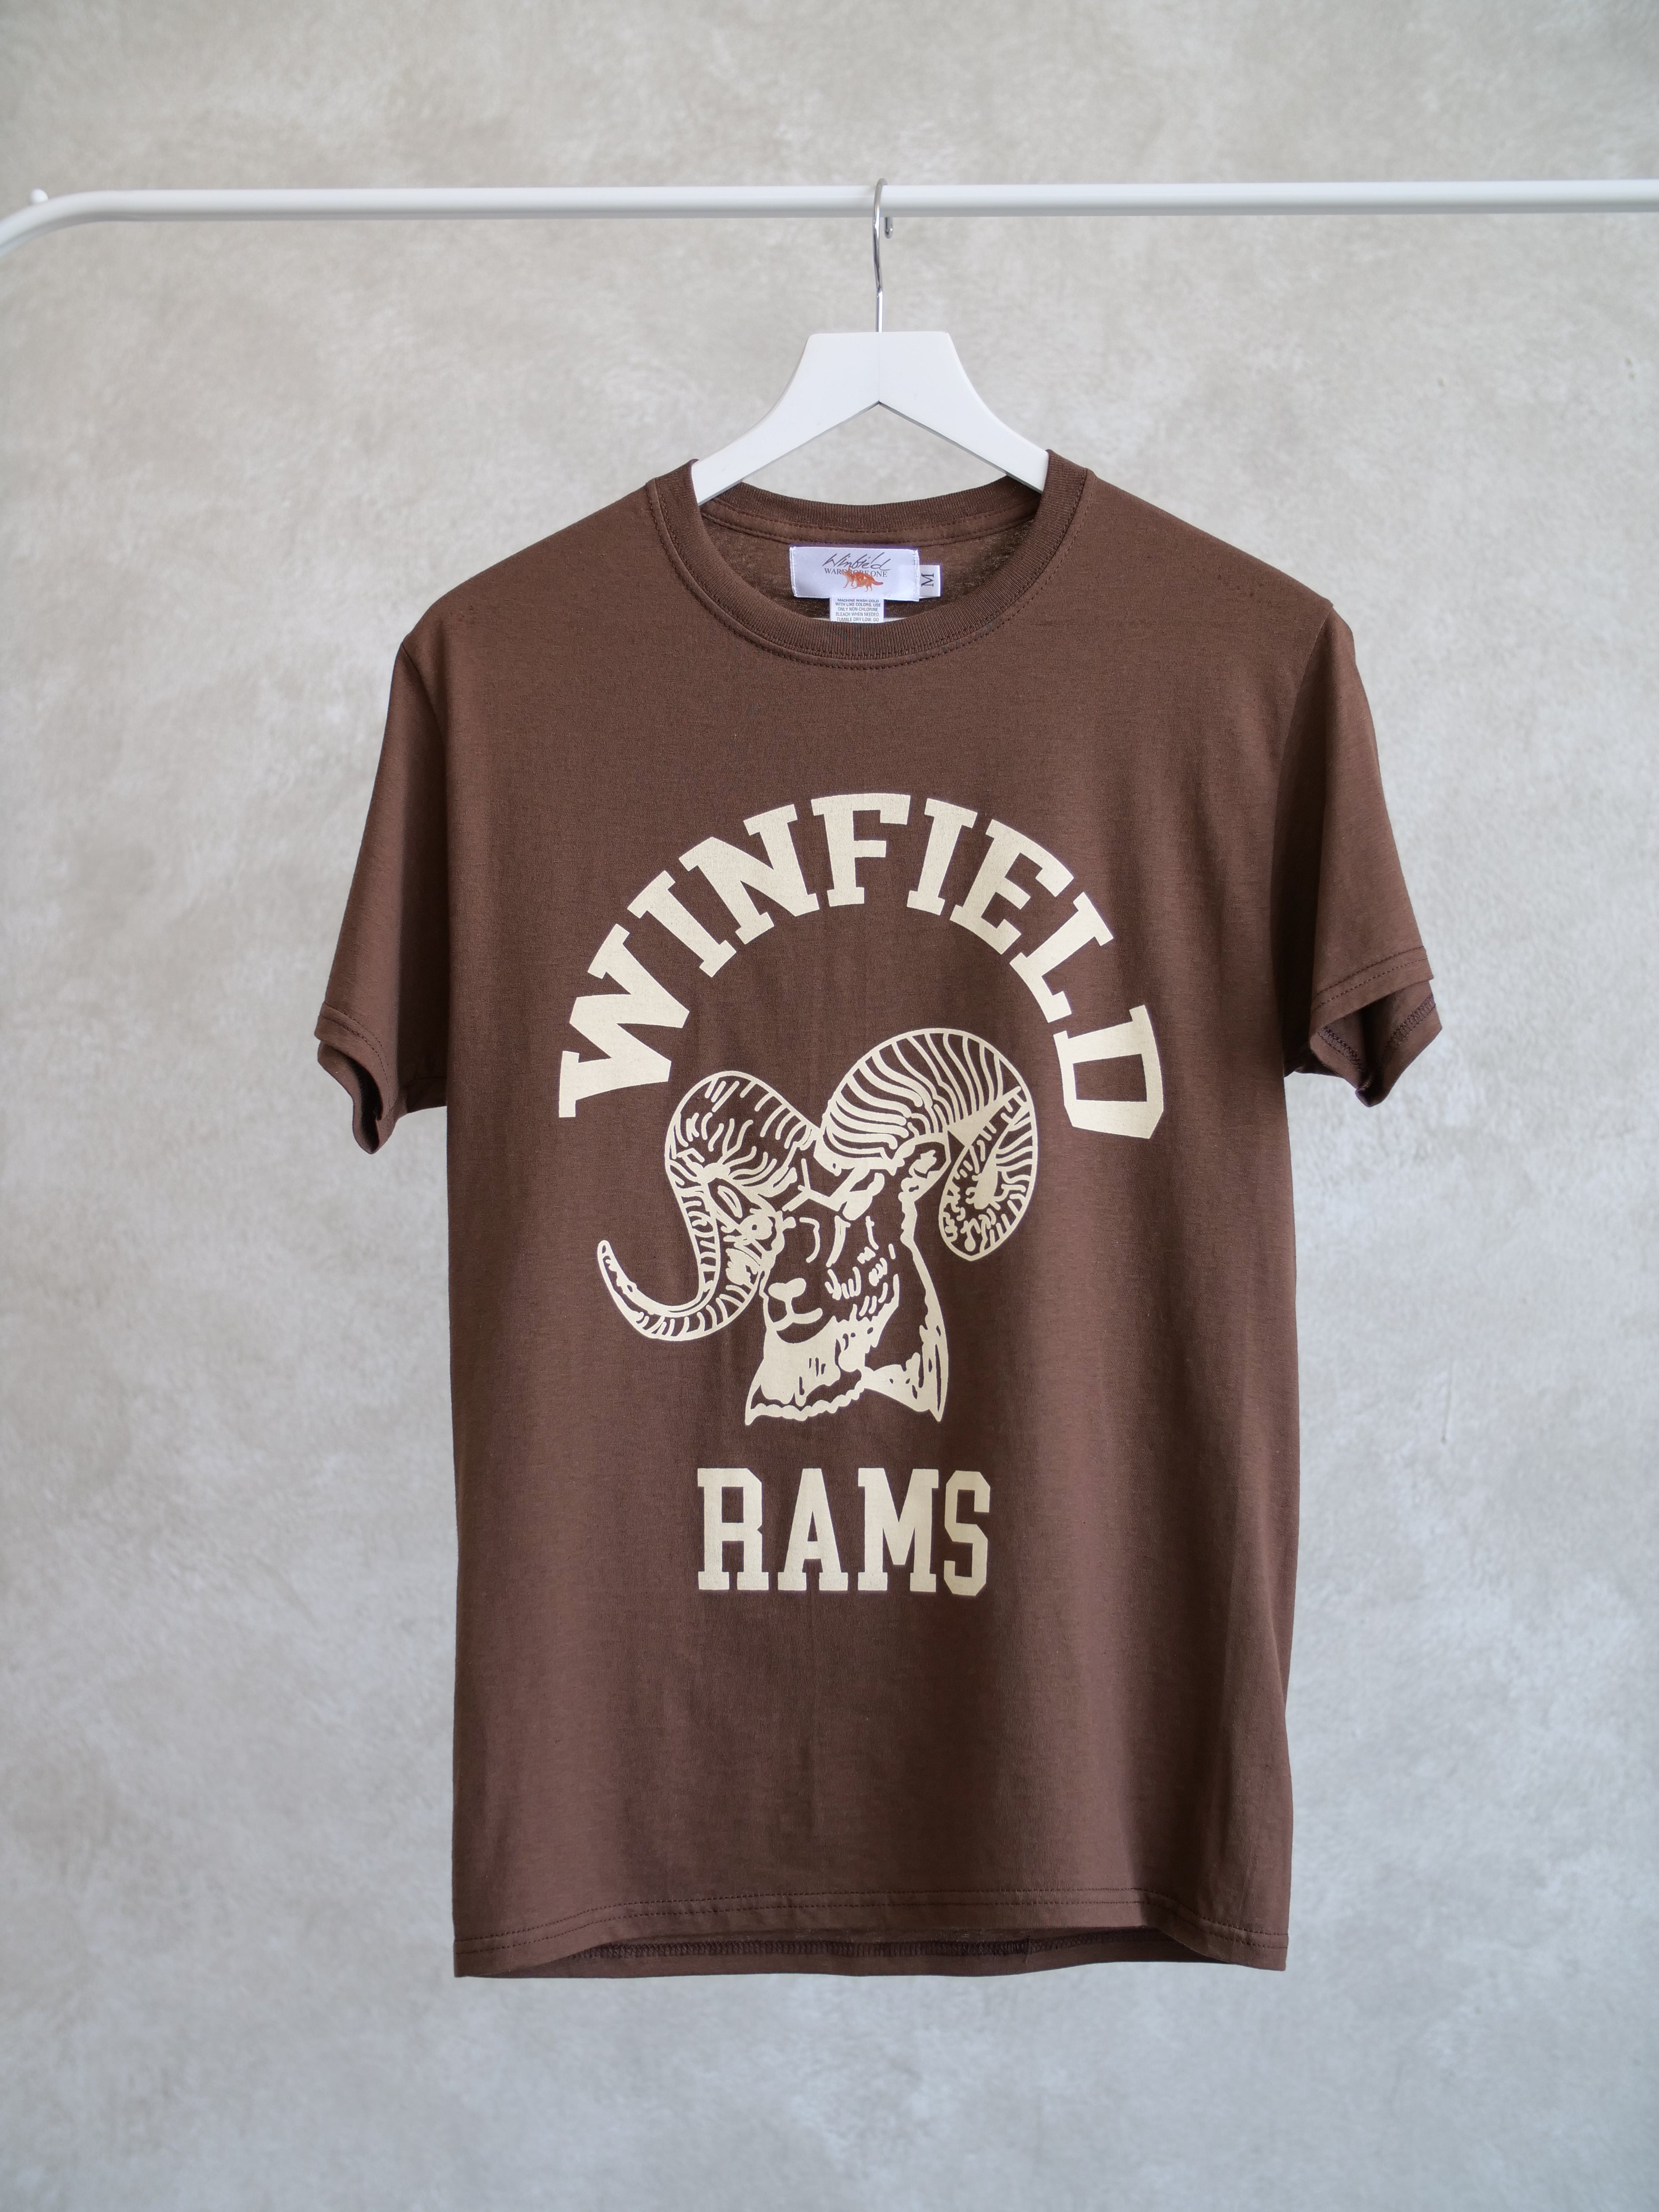 Winfield Rams T Shirt